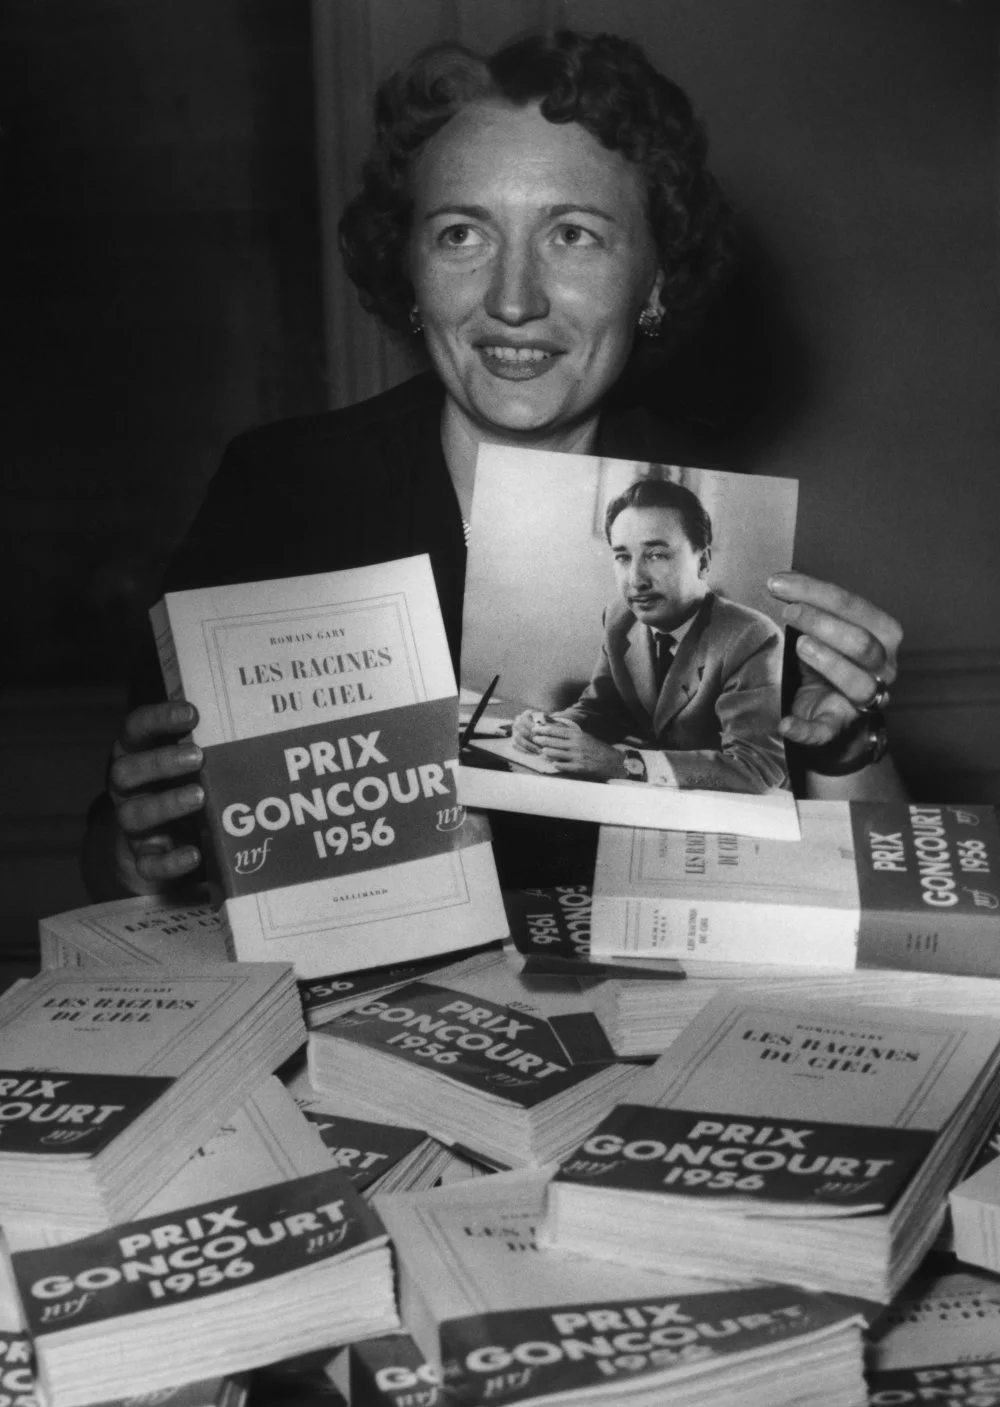 Книга Гари «Корни неба» была удостоена Гонкуровской премией(Prix Goncourt) в 1956 году/Getty images